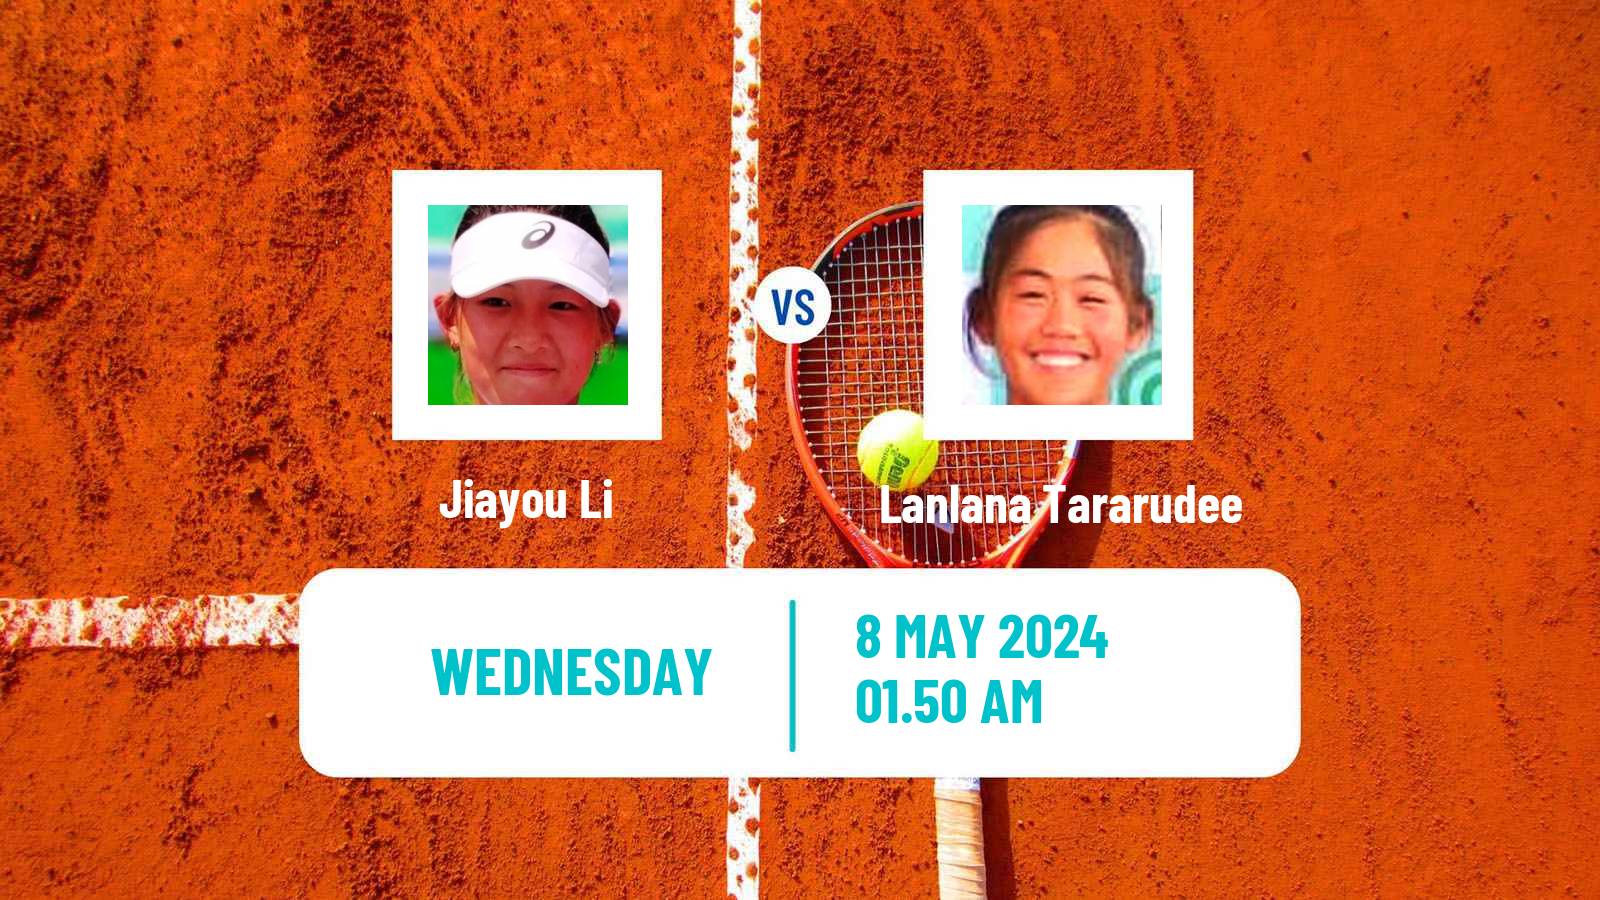 Tennis ITF W75 Luan Women Jiayou Li - Lanlana Tararudee